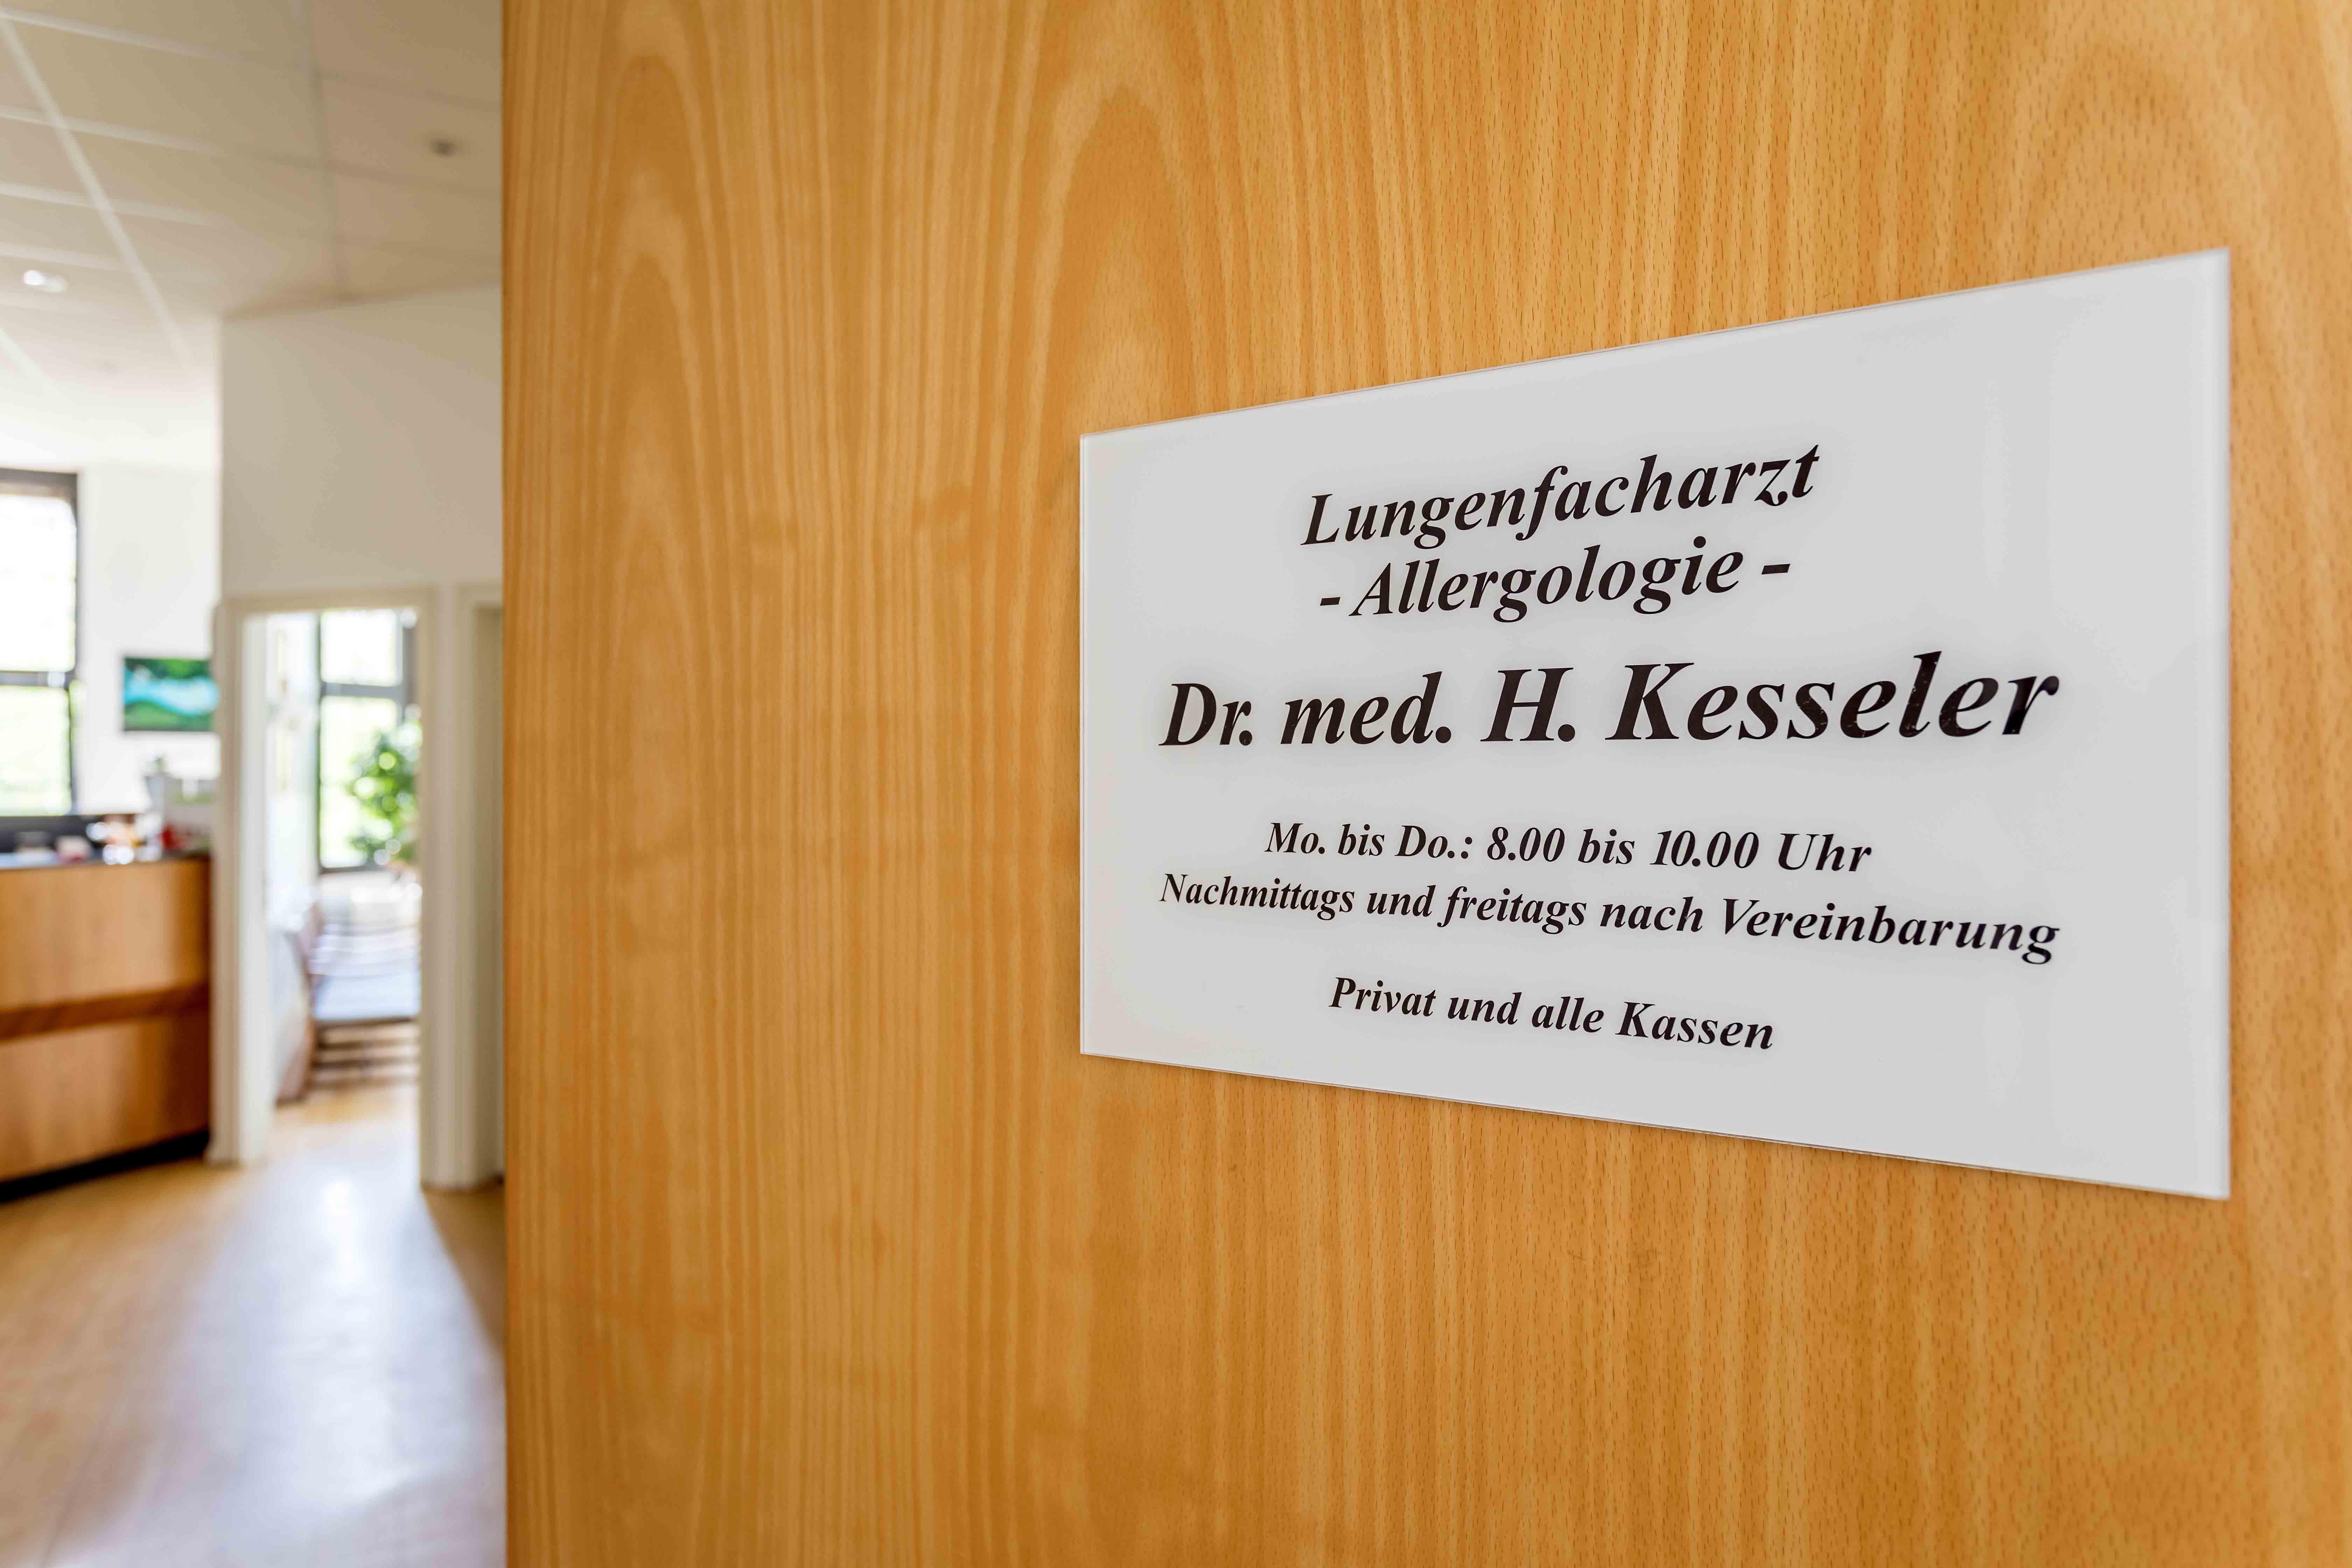 Dr. med. H. Kesseler